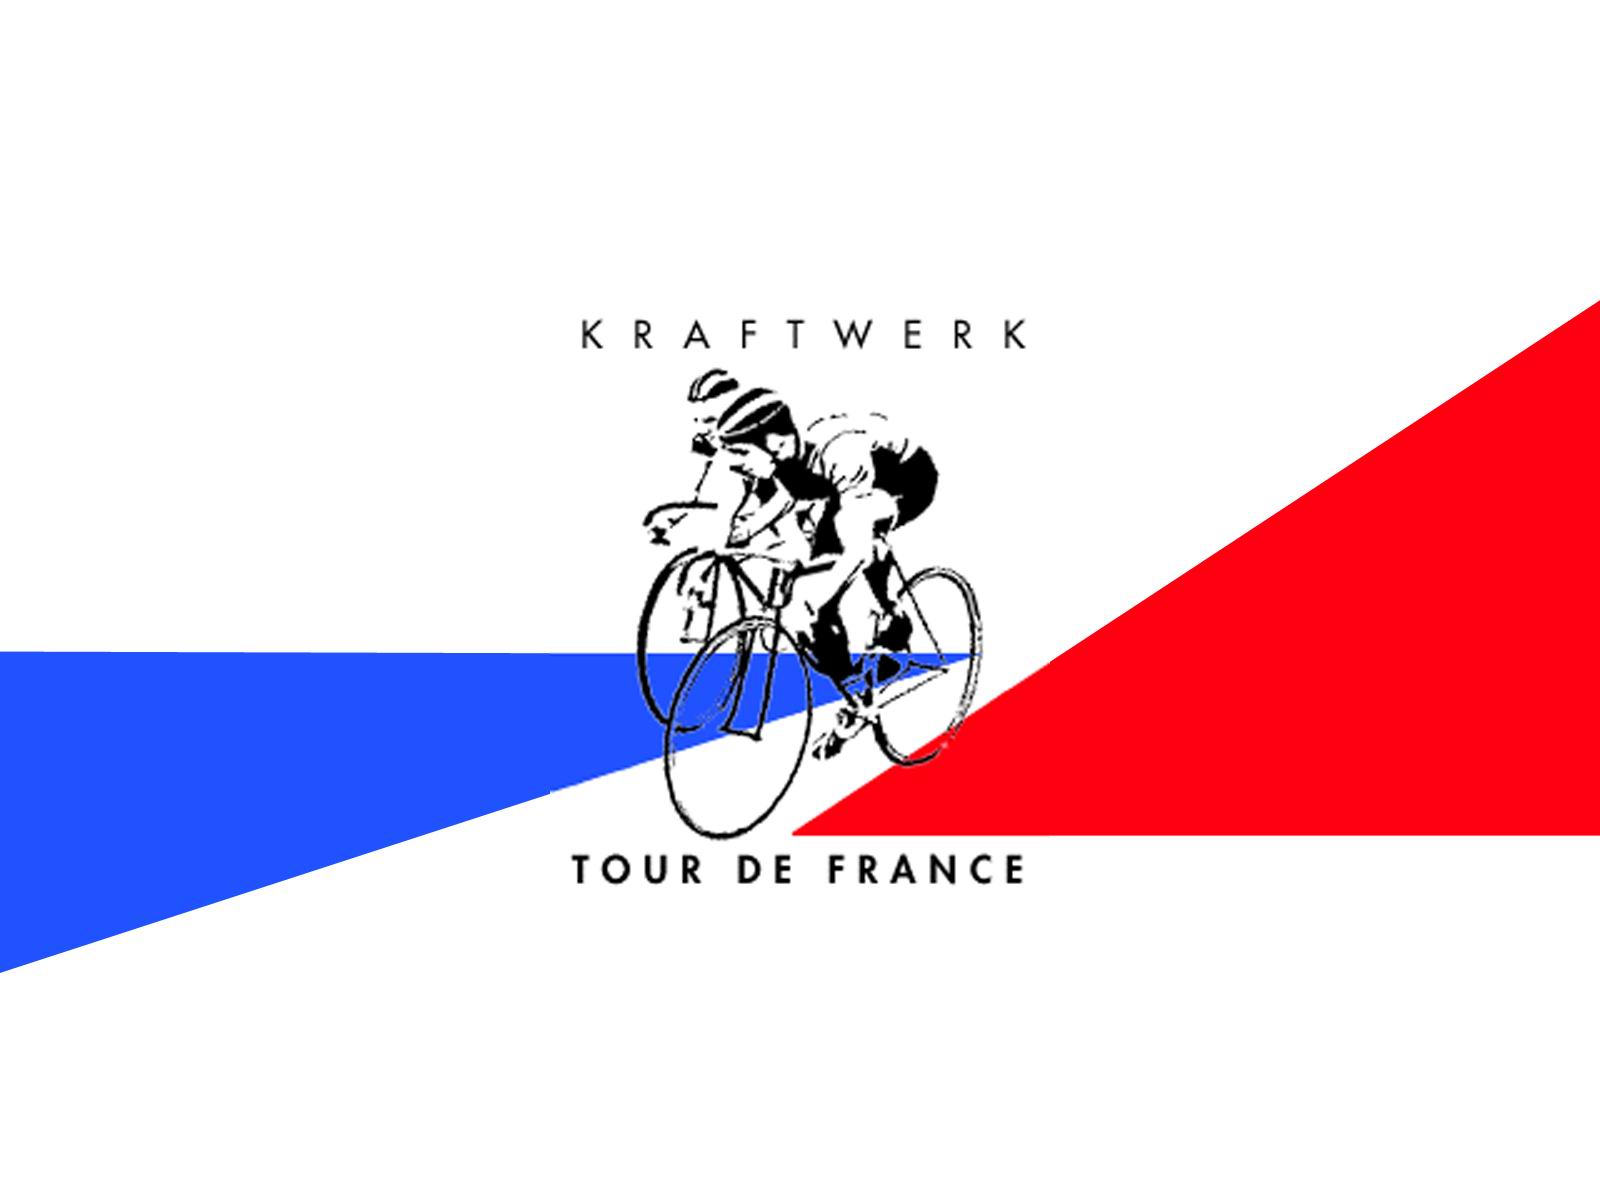 Tour de France - 1680x1050 by megabit on DeviantArt